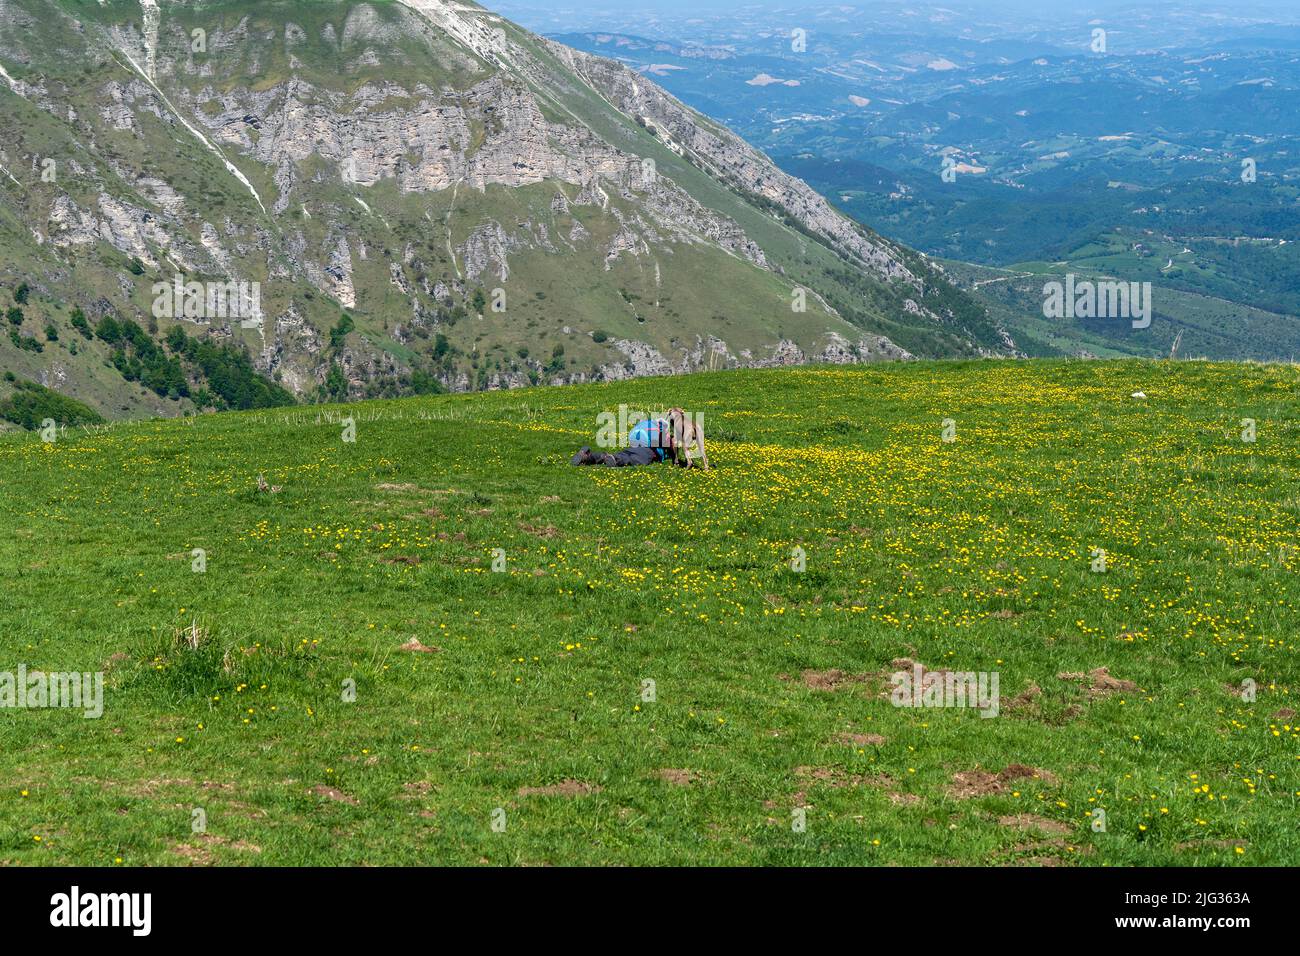 Monti Sibillini National Park, View from the Fosso Zappacenere path, Foce di Montemonaco, Marche, Italy, Europe Stock Photo